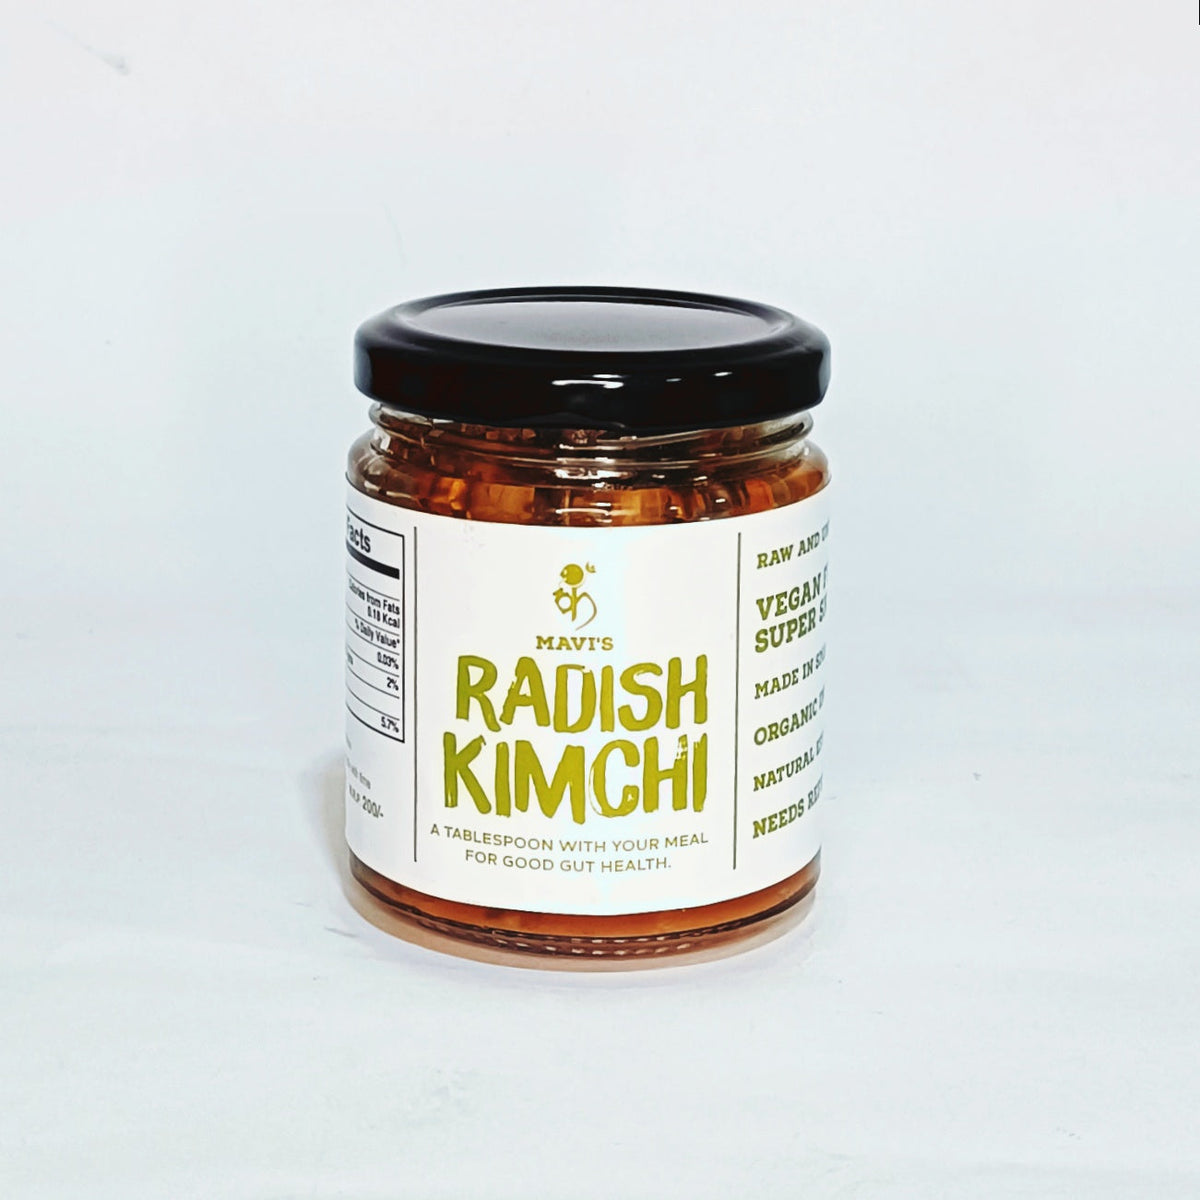 MAVI's Radish kimchi 500gms